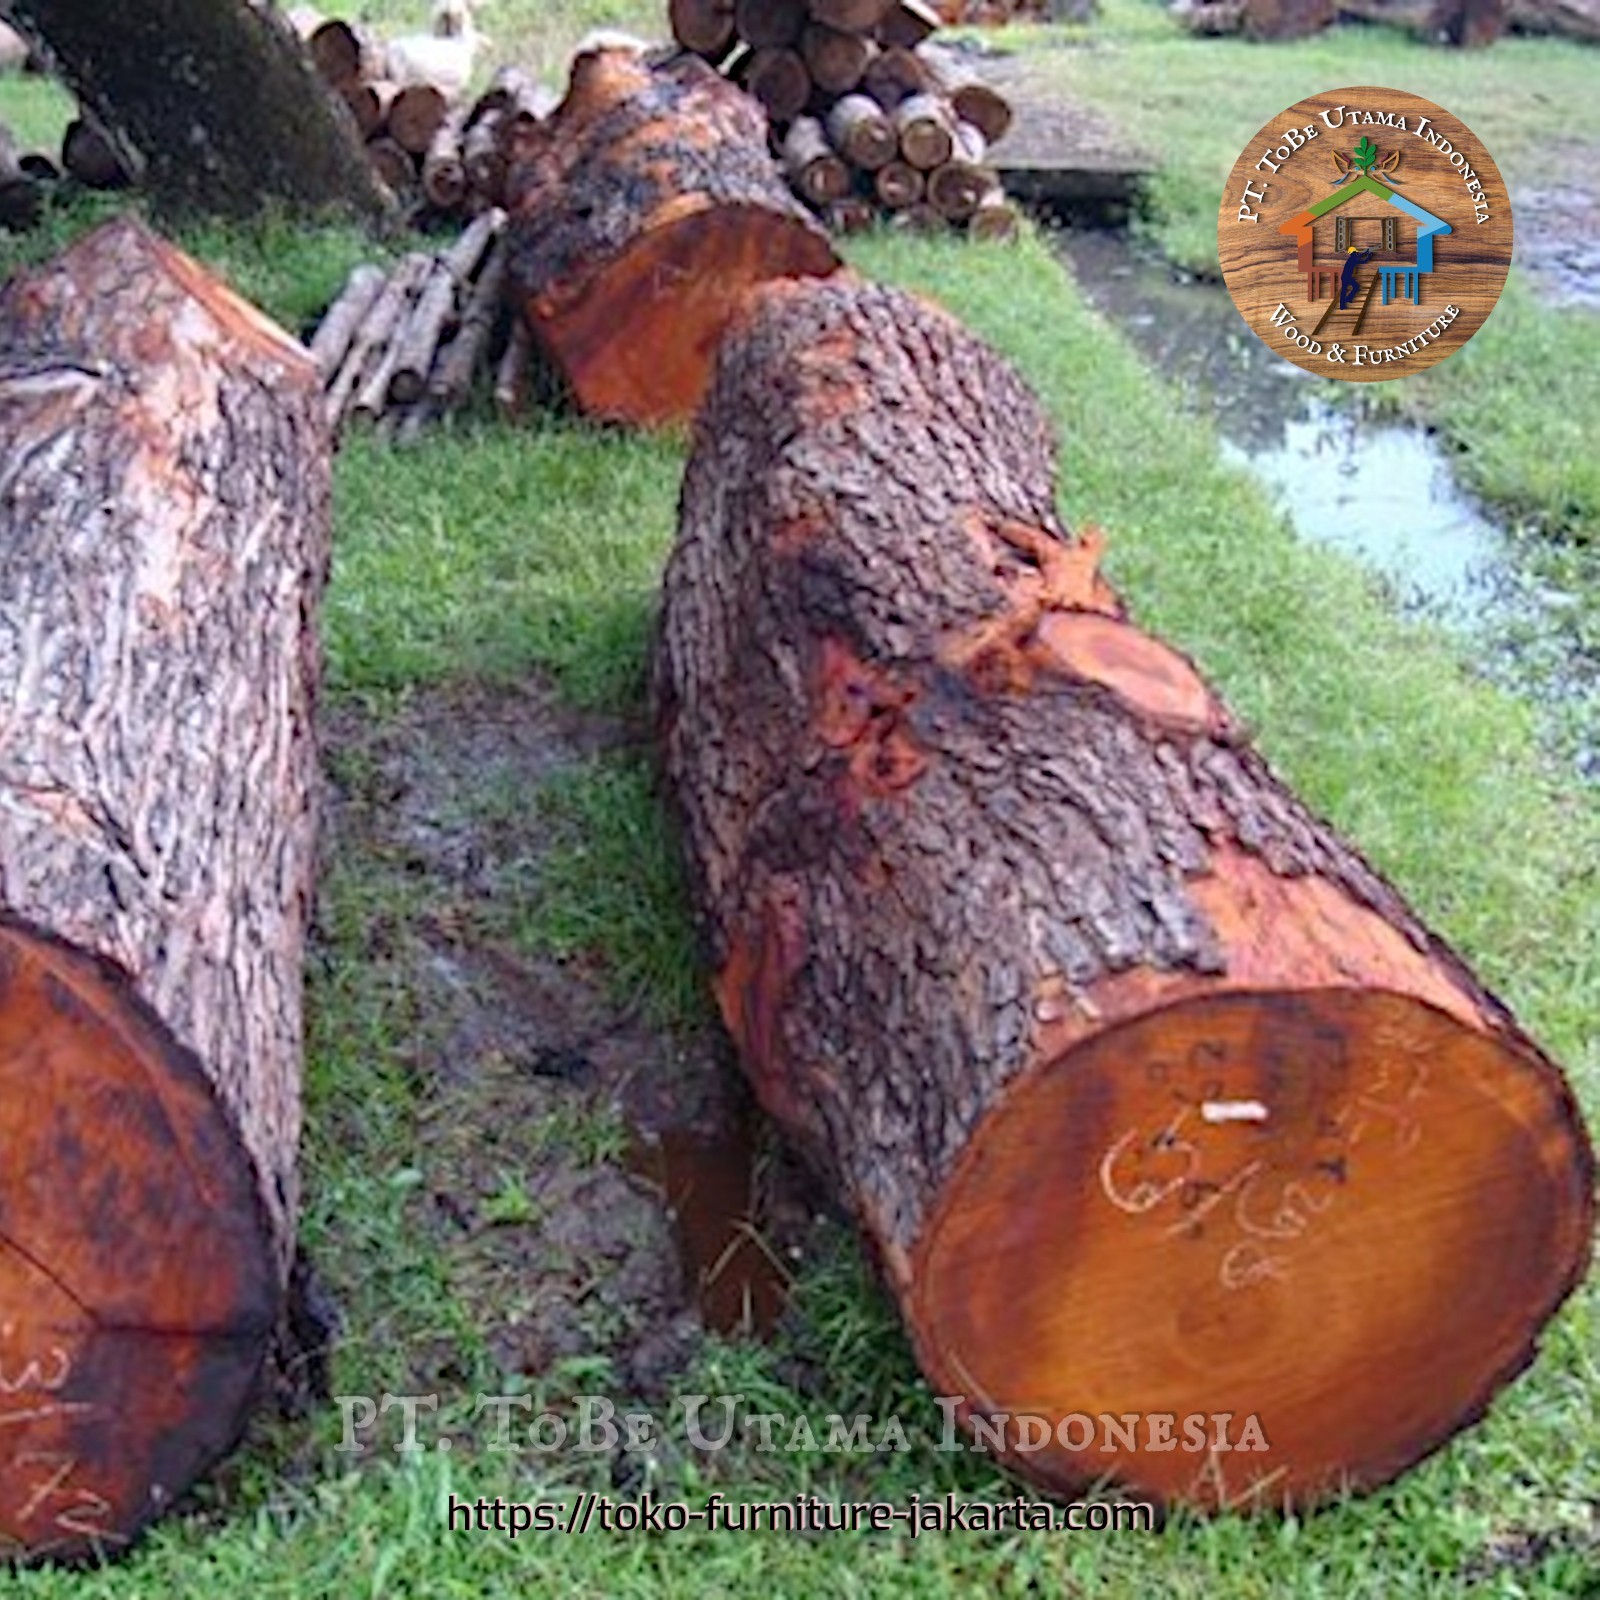 Wood Logs & Timber Wood: Mahogany Logs made of mahogany wood (image 1 of 2).